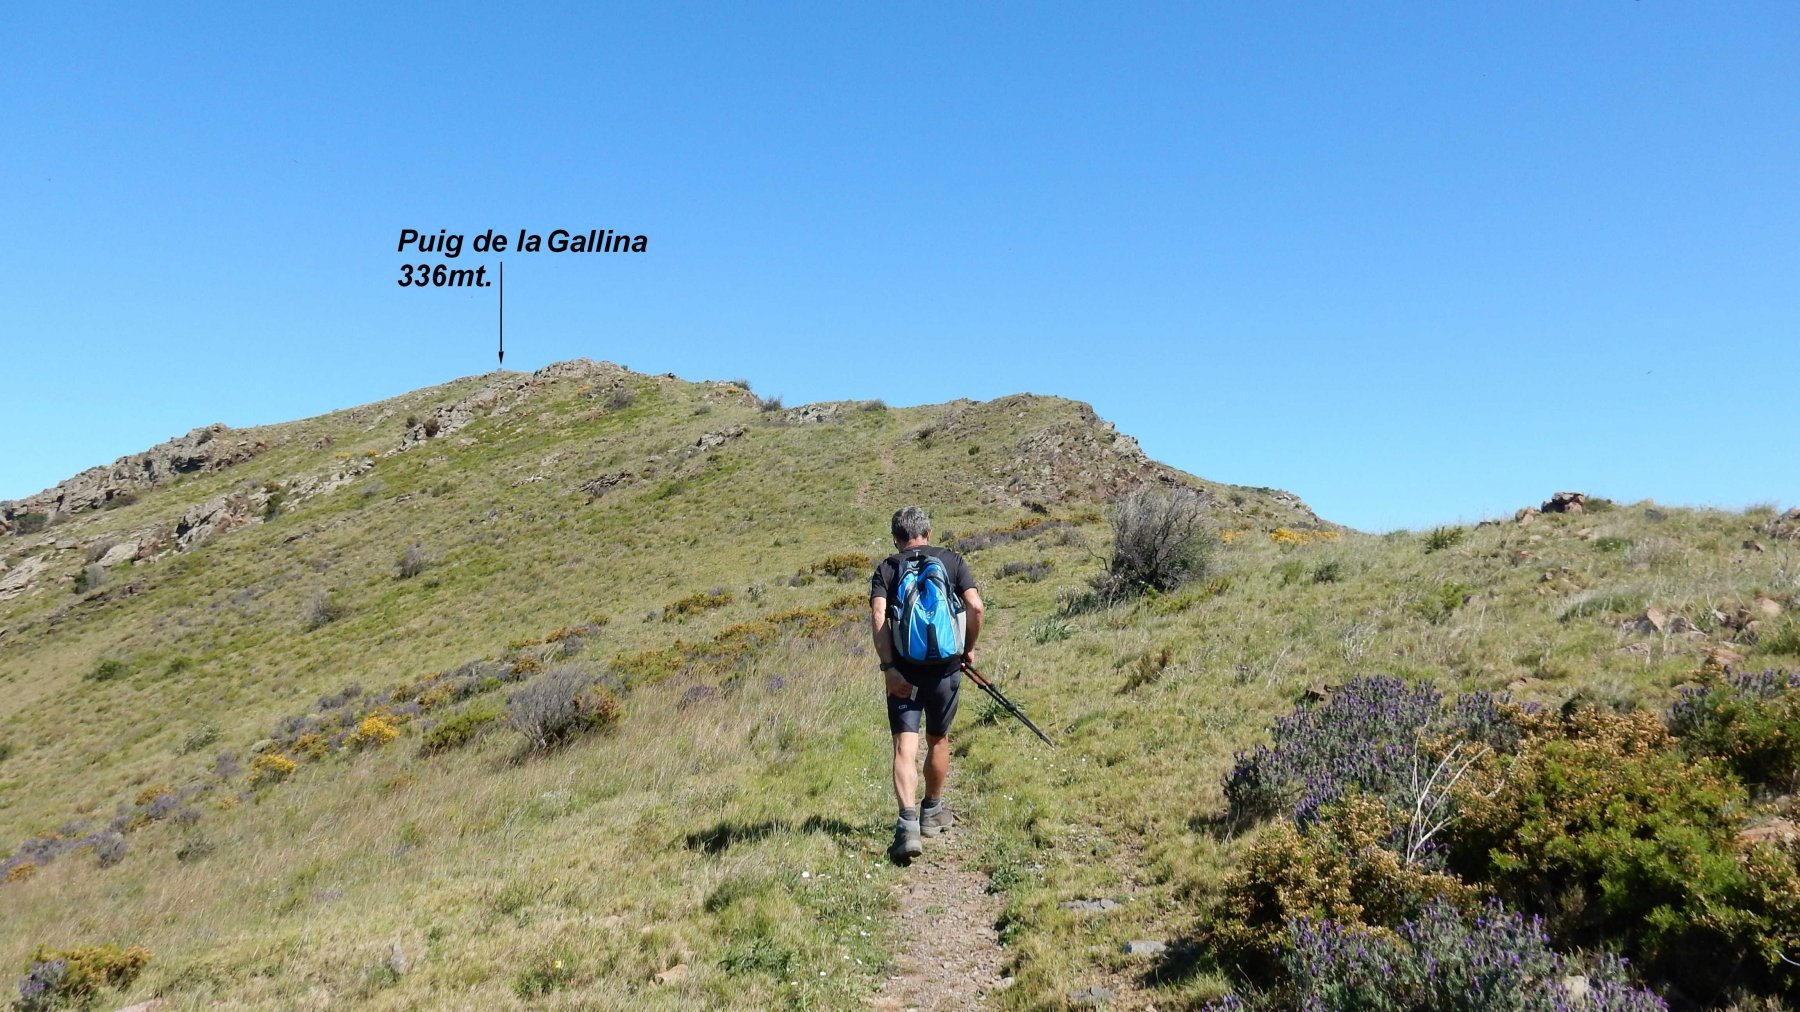 Breve salita al Puig de la Gallina 336mt.